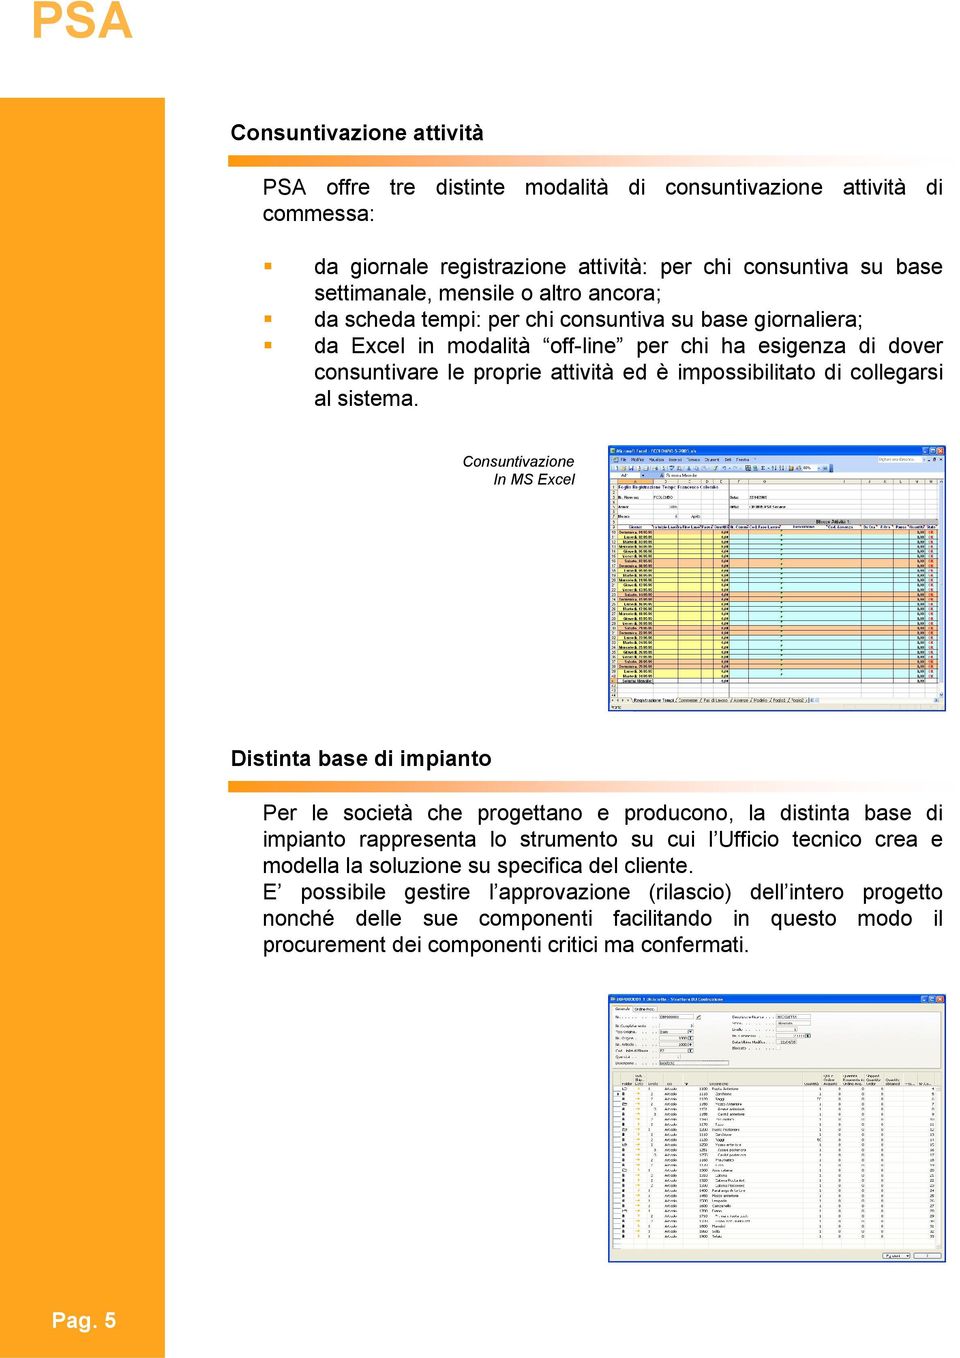 Consuntivazione In MS Excel Distinta base di impianto Per le società che progettano e producono, la distinta base di impianto rappresenta lo strumento su cui l Ufficio tecnico crea e modella la